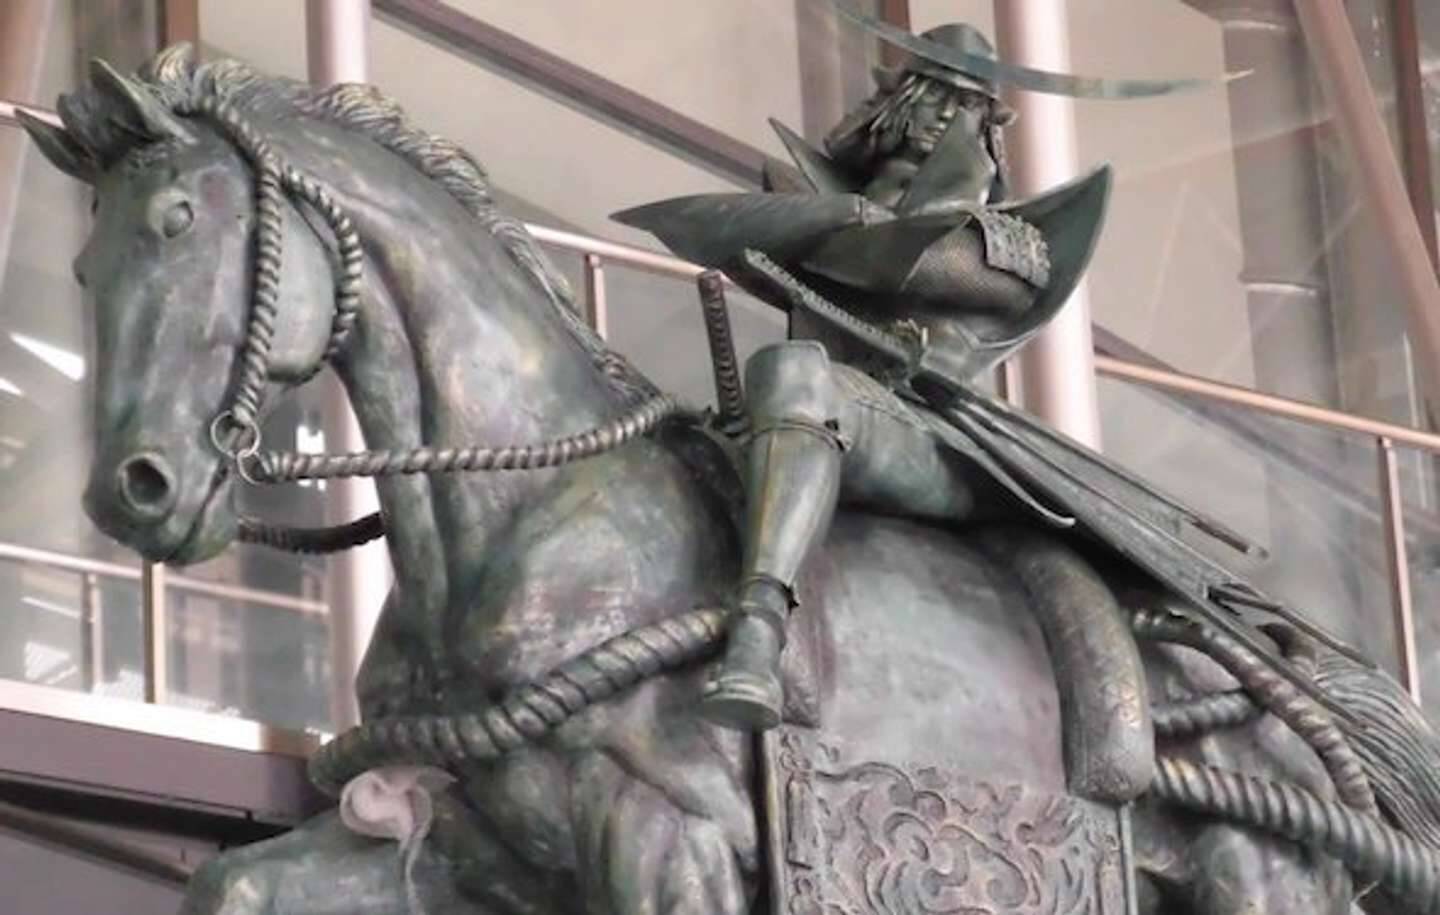 この 伊達政宗 めちゃめちゃcool 宮城 白石市に立つ騎馬像に反響 パーリーしそう 21年11月28日 エキサイトニュース 3 3